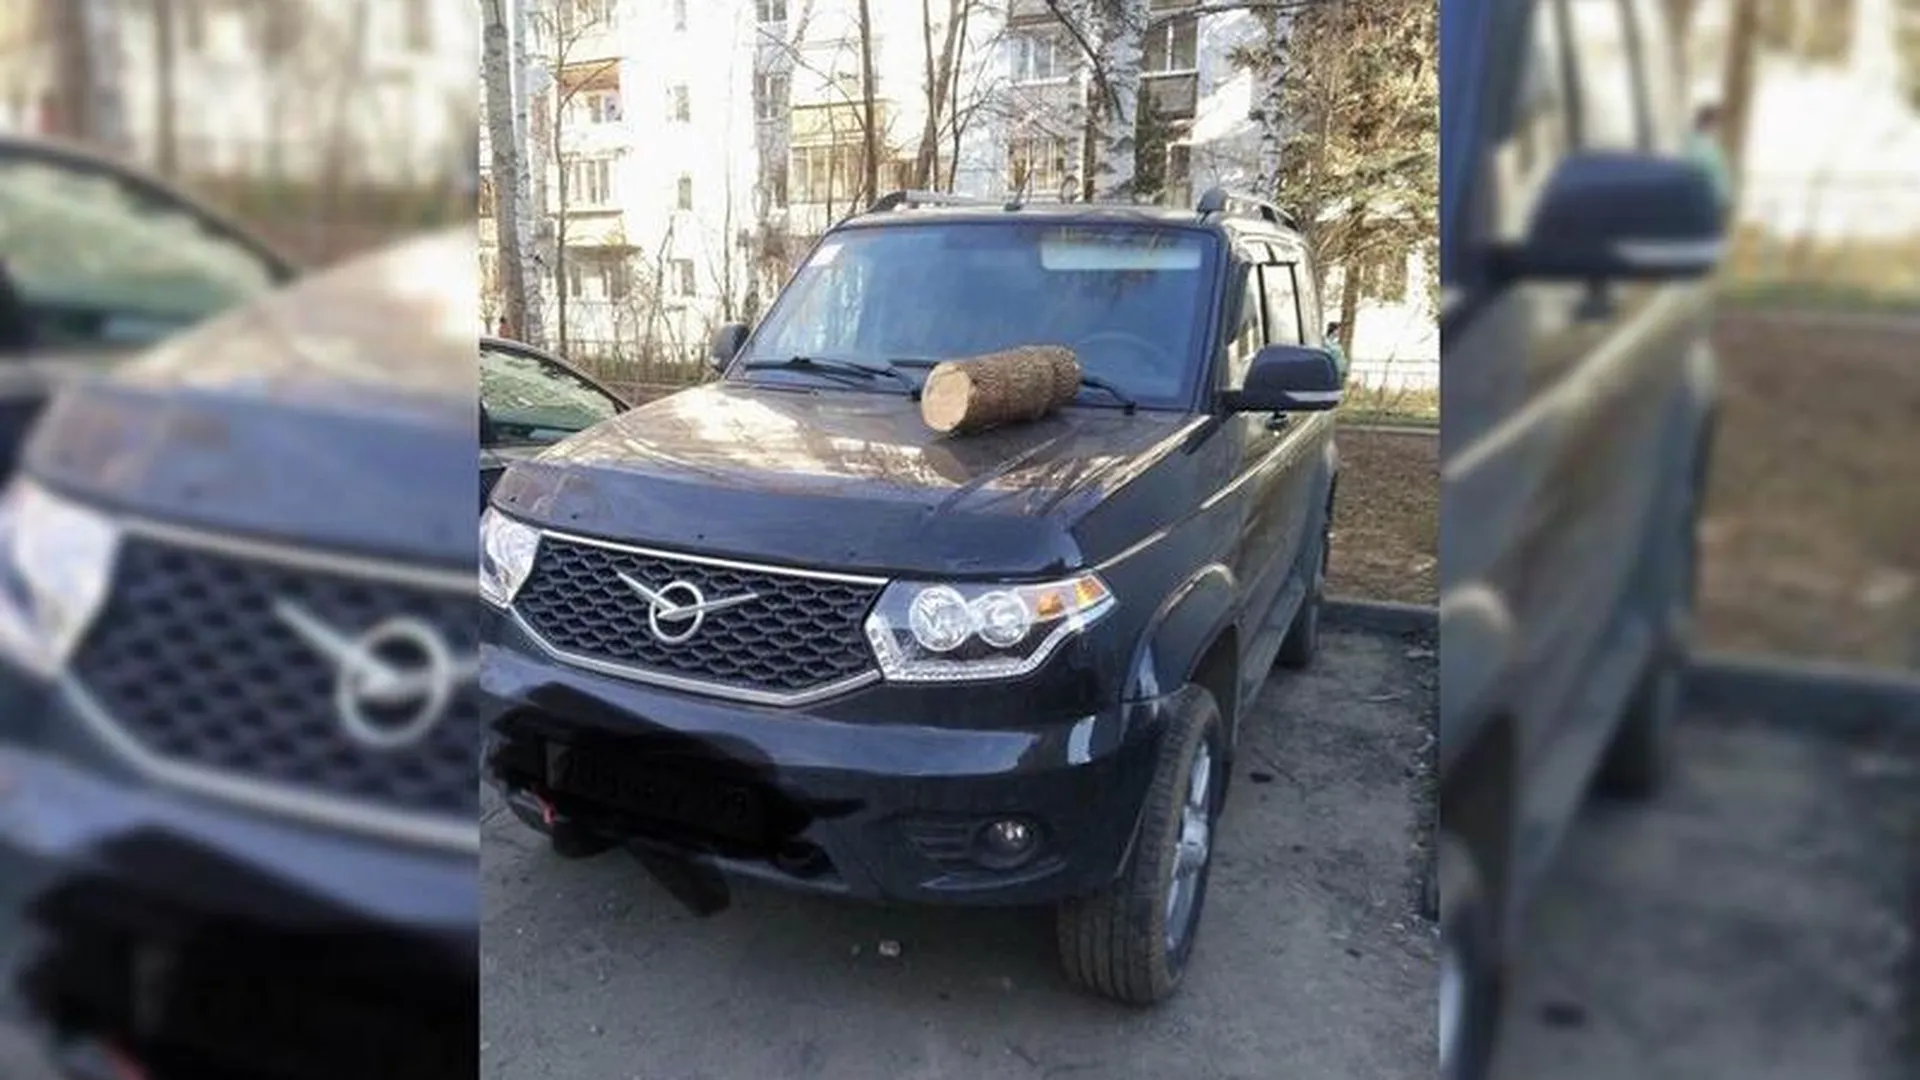 Парковочный мститель объявился в Пушкино